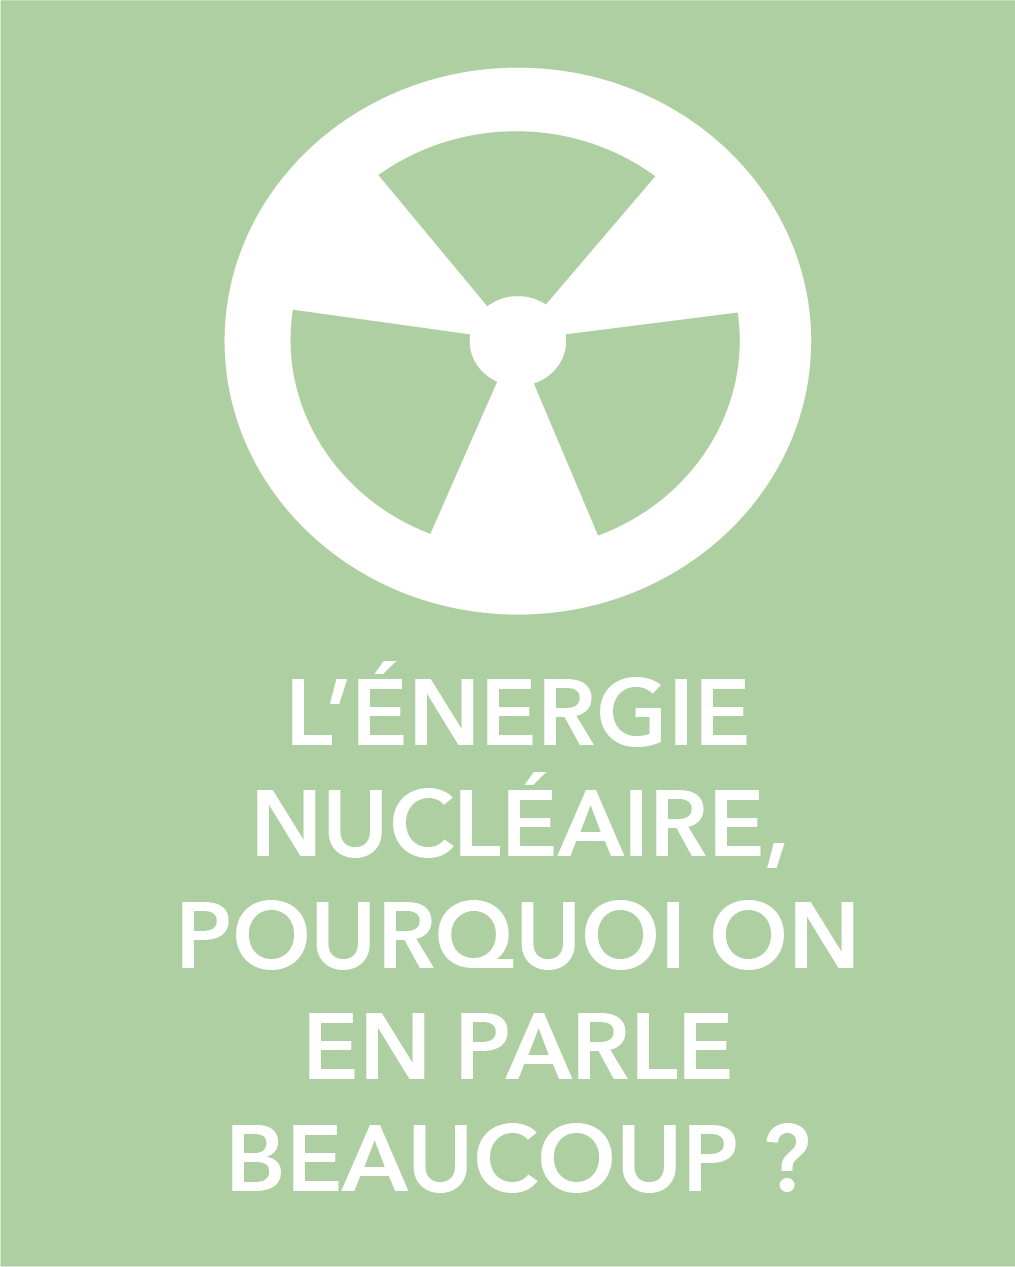 L'énergie nucléaire, pourquoi on en parle beaucoup ?